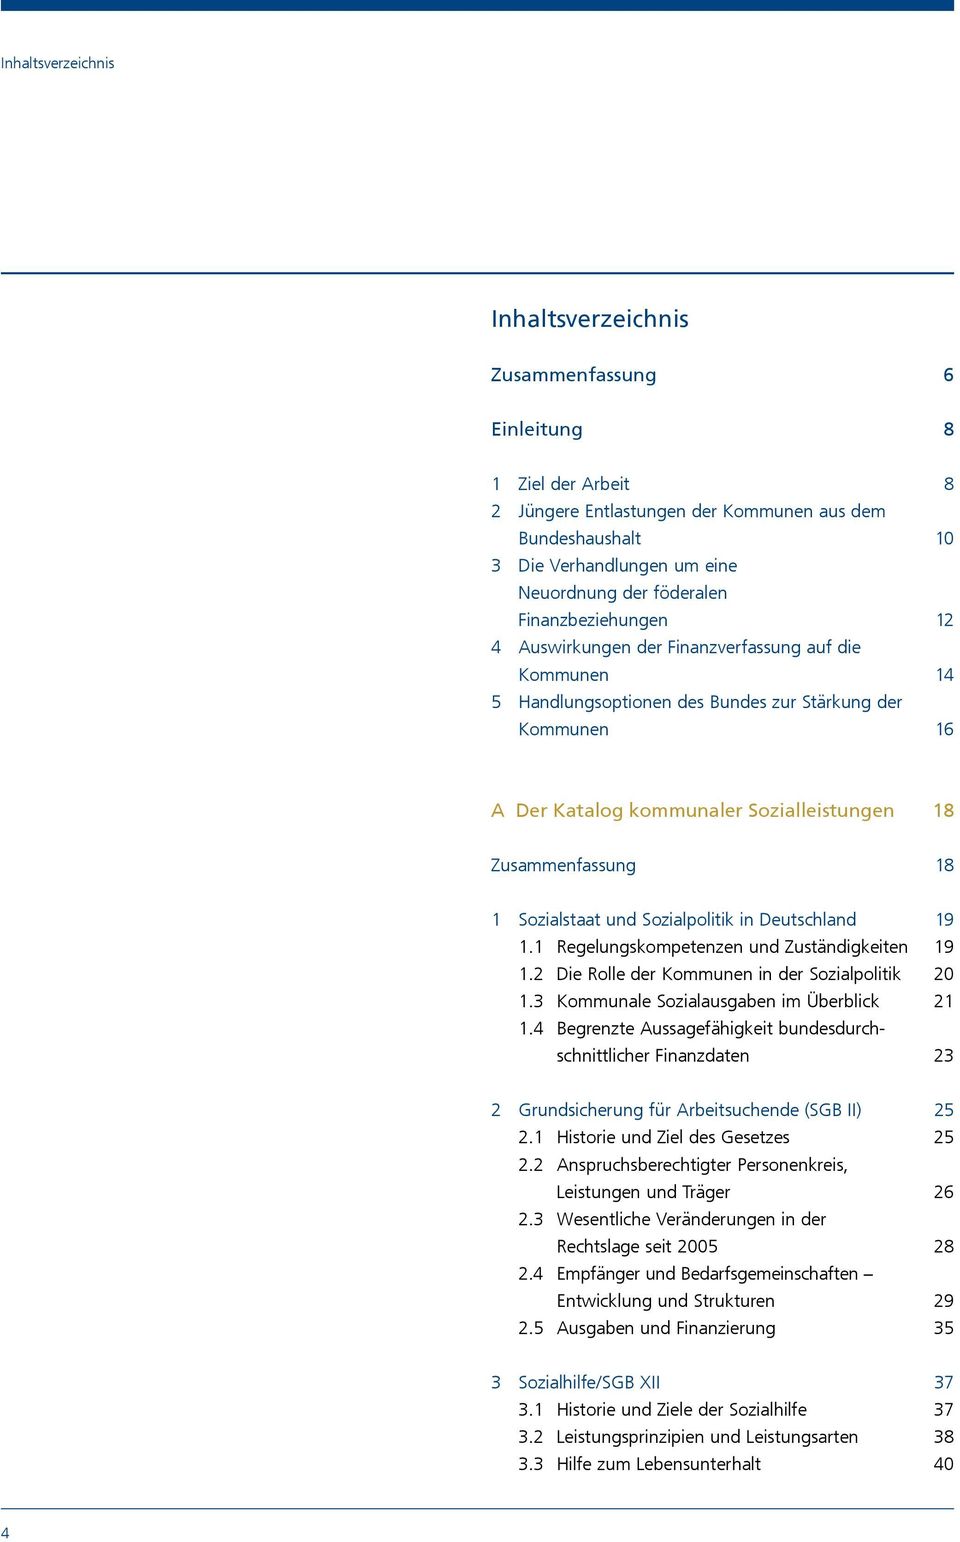 Zusammenfassung 18 1 Sozialstaat und Sozialpolitik in Deutschland 19 1.1 Regelungskompetenzen und Zuständigkeiten 19 1.2 Die Rolle der Kommunen in der Sozialpolitik 20 1.